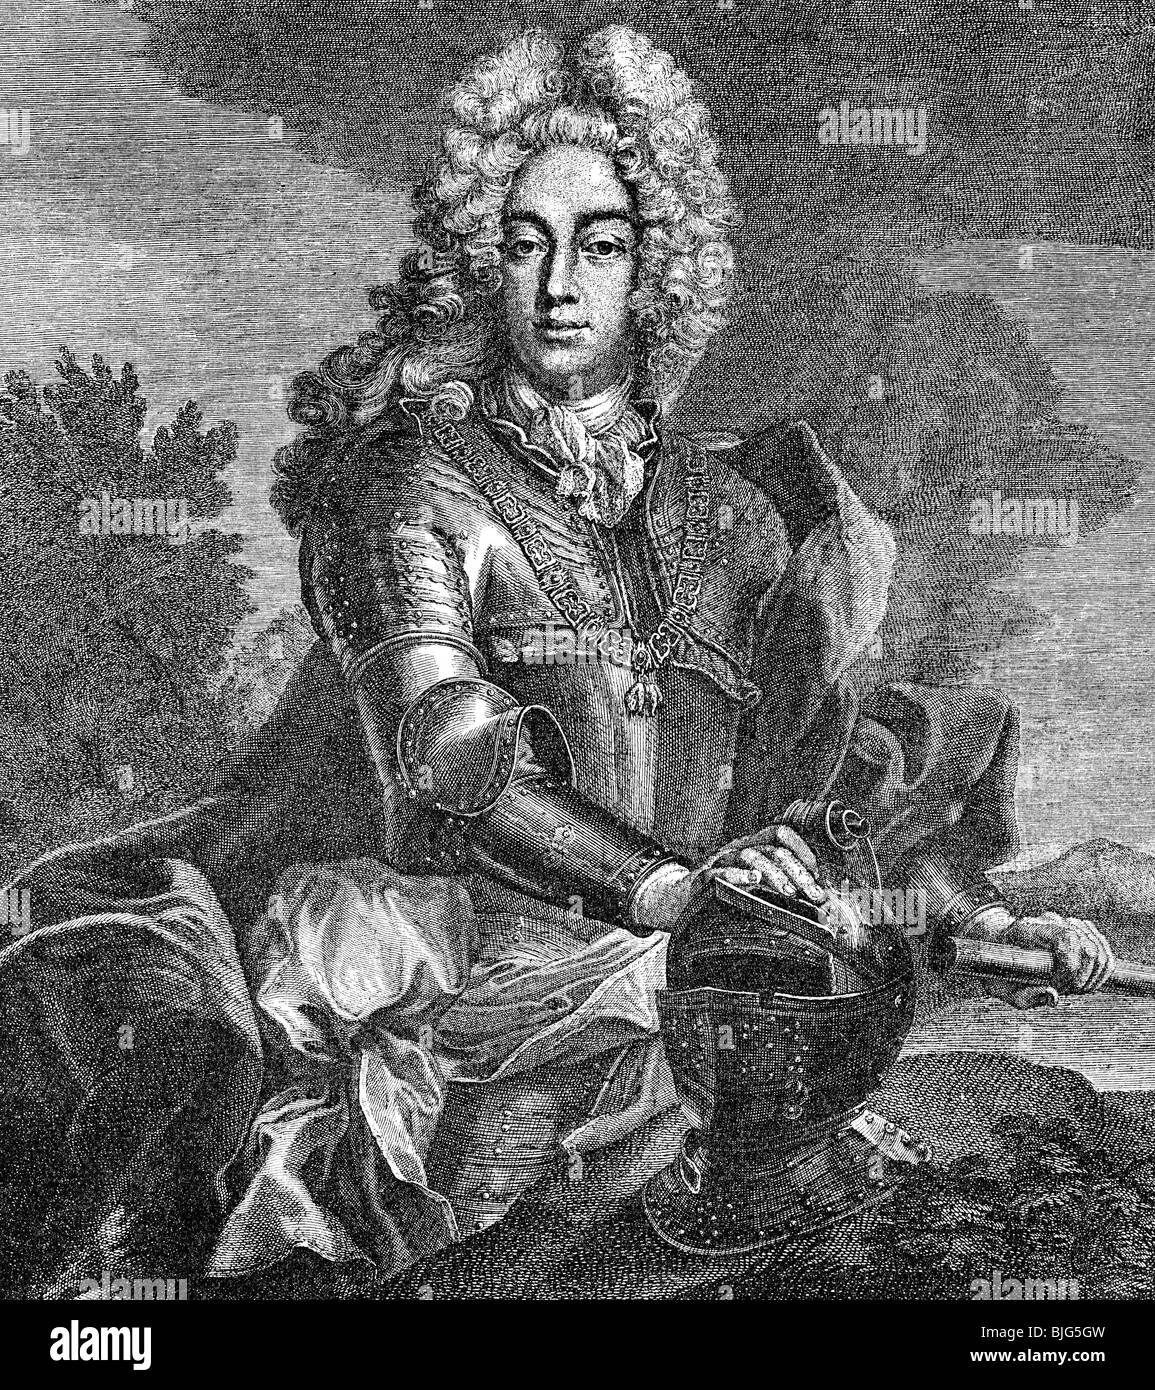 Charles VII Albert, 6.8.1697 - 20.1.1745, Sacro Romano Imperatore 24.1.1742 - 20.1.1745, incisione su rame di F. J. Spaett, circa 1735, , artista del diritto d'autore non deve essere cancellata Foto Stock